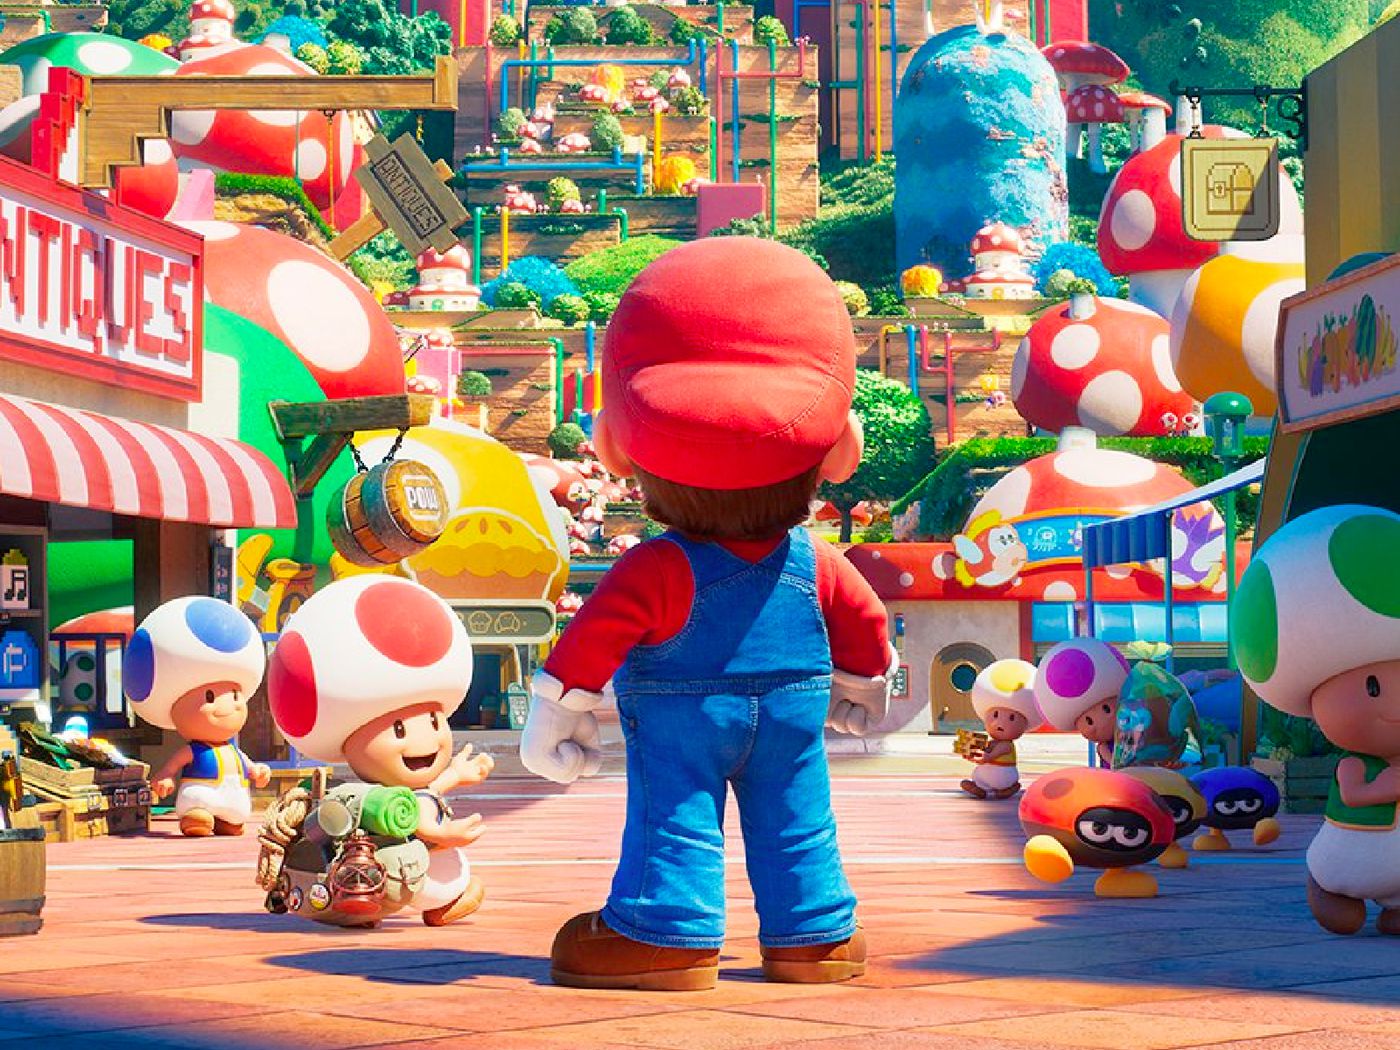 Chriss Pratt يطلب من المعجبين مشاهدة فيلم The Super Mario Bros. Movie قبل توجيه الانتقادات حول التمثيل الصوتي